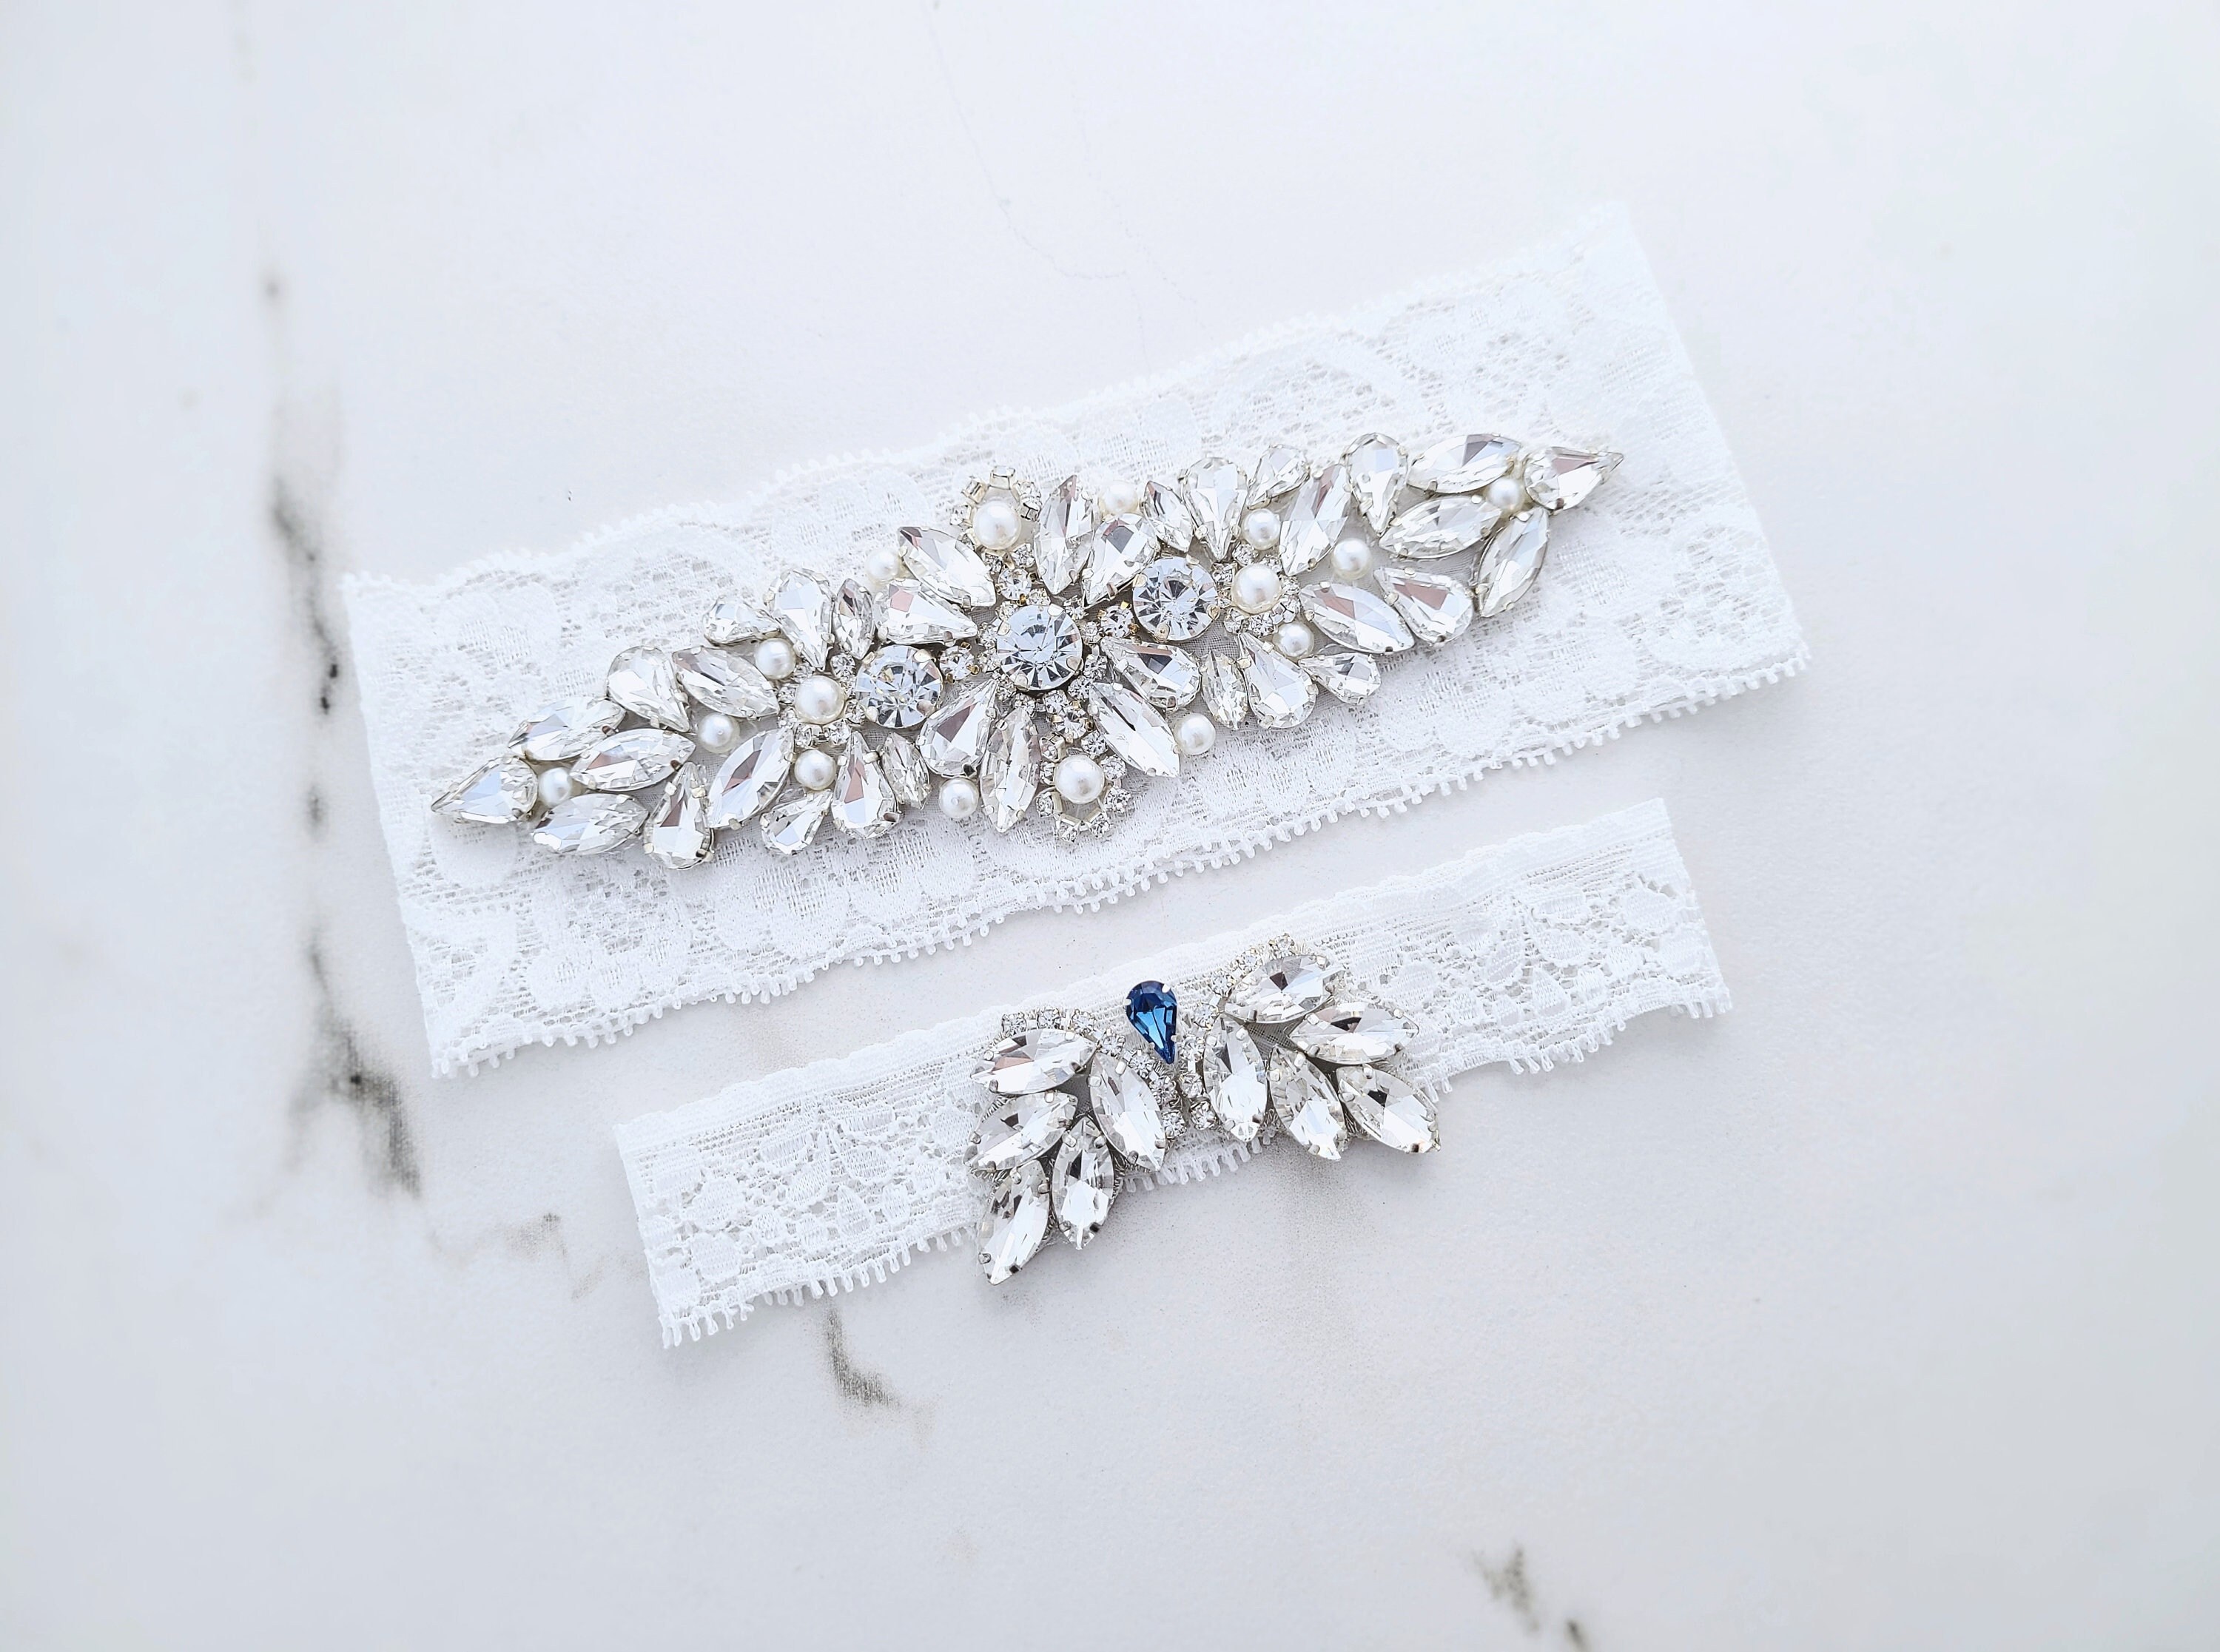 Ivory Blue Wedding Garter Set w/ Pearl Rhinestone Bow Lace Ocean Bride Gift S4B 